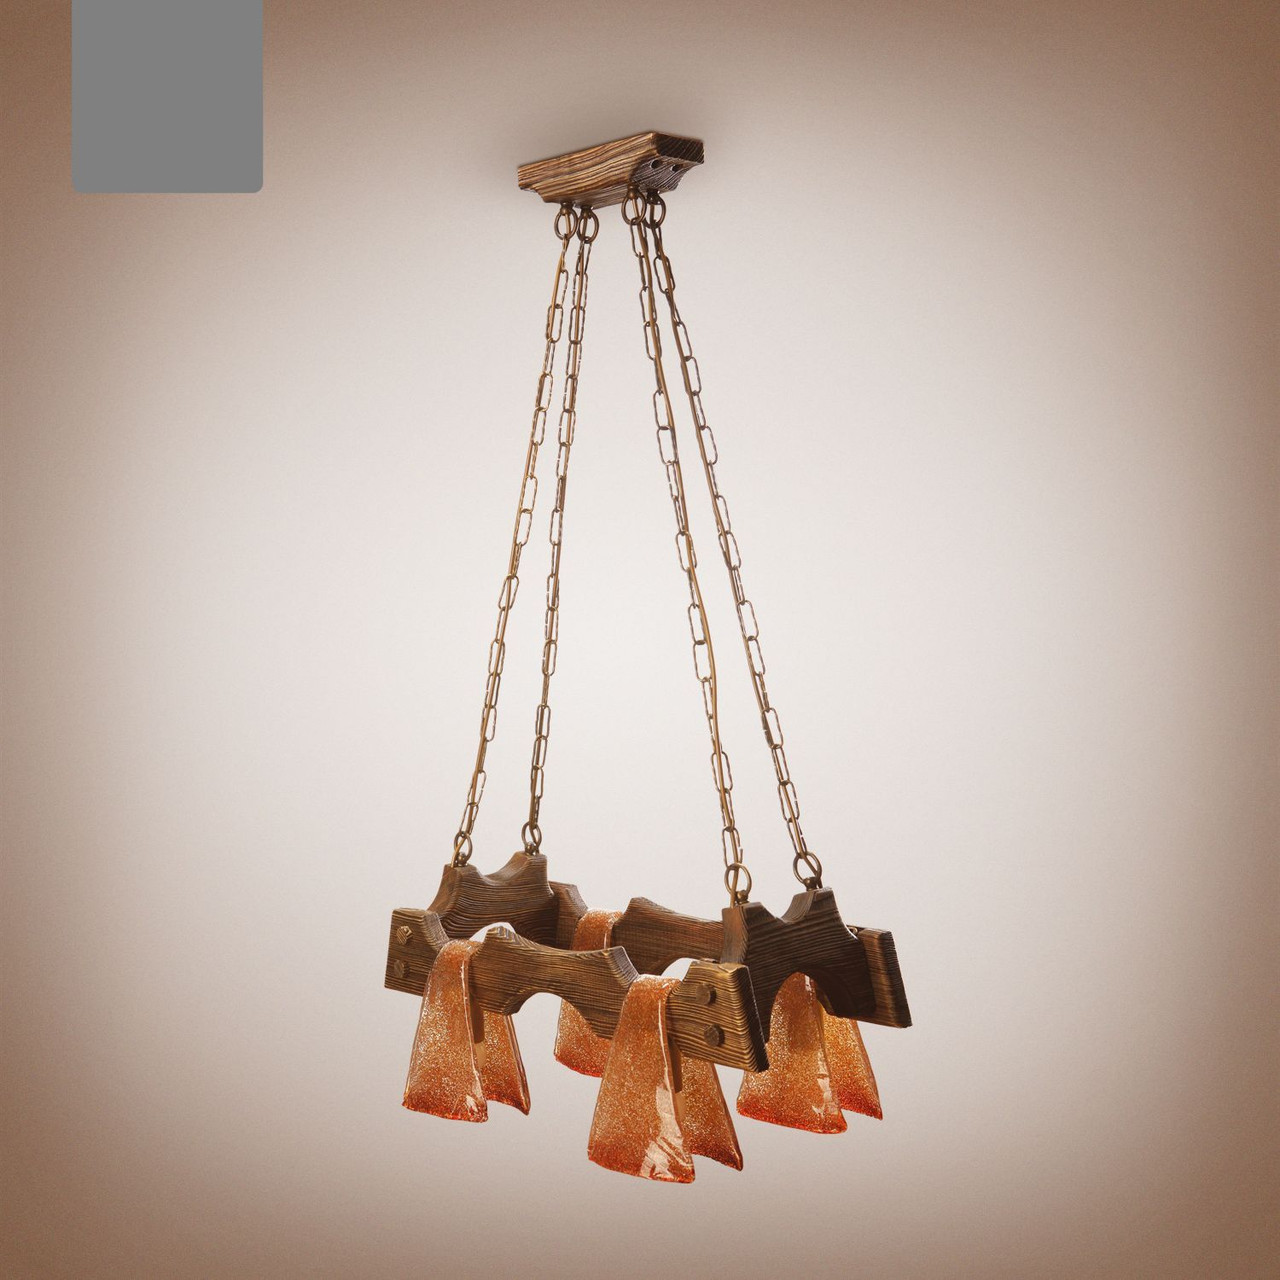 Люстра дерев'яна, 4-х лампова на ланцюгу для кафе, дачі, камінної зали 1414 серії "Шервуд рушник"